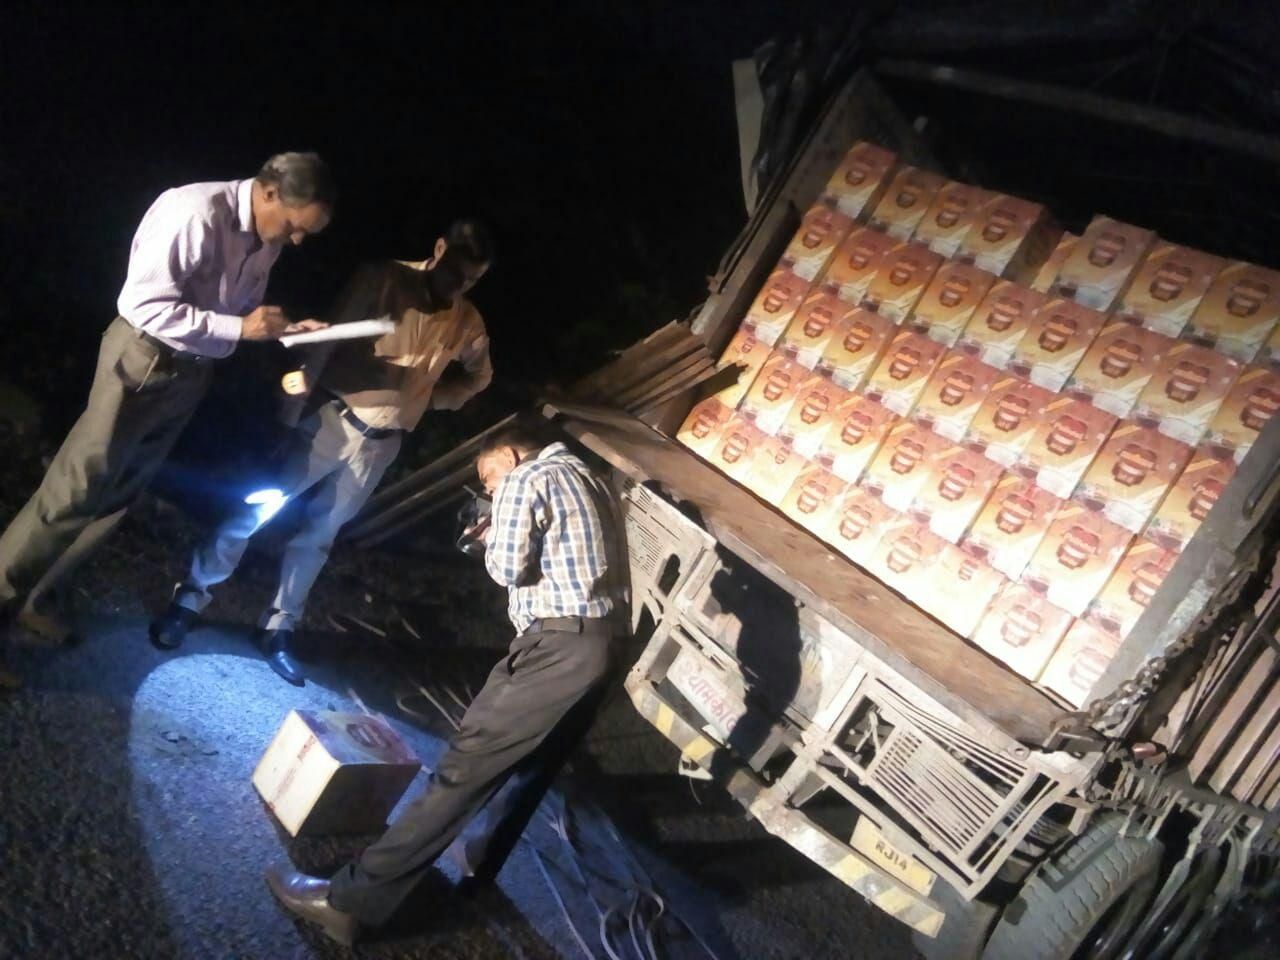 Action : व्यापारी ने नकली बताकर लौटाया 90 लाख का घी, पुलिस ने पकड़ा